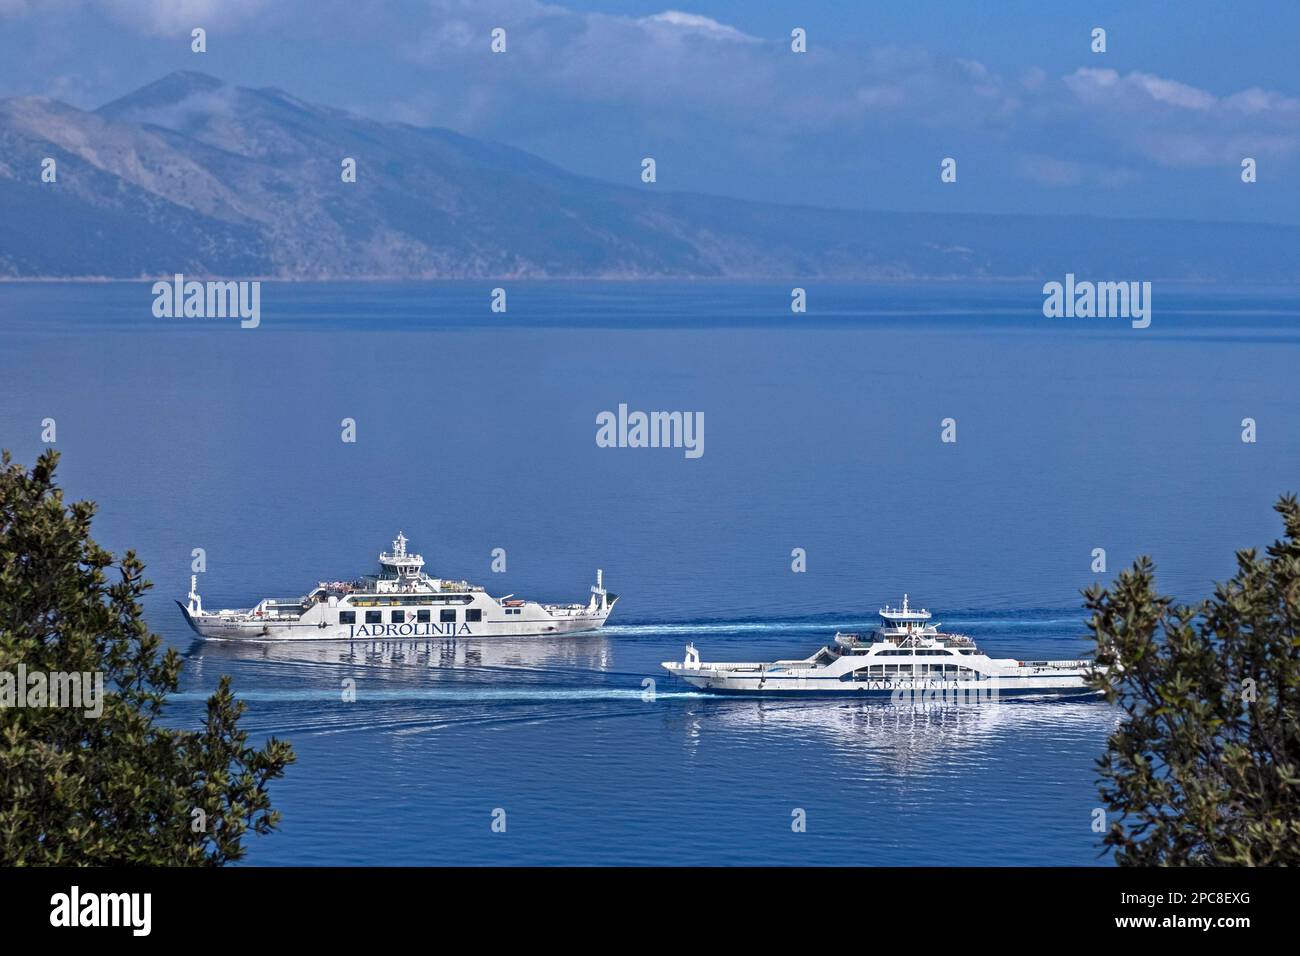 Deux bateaux de ferry pour voitures Jadrolinija sur la route Valbiska - Merag, reliant les îles Krk et Cres dans la baie de Kvarner, Primorje-Gorski Kotar, Croatie Banque D'Images